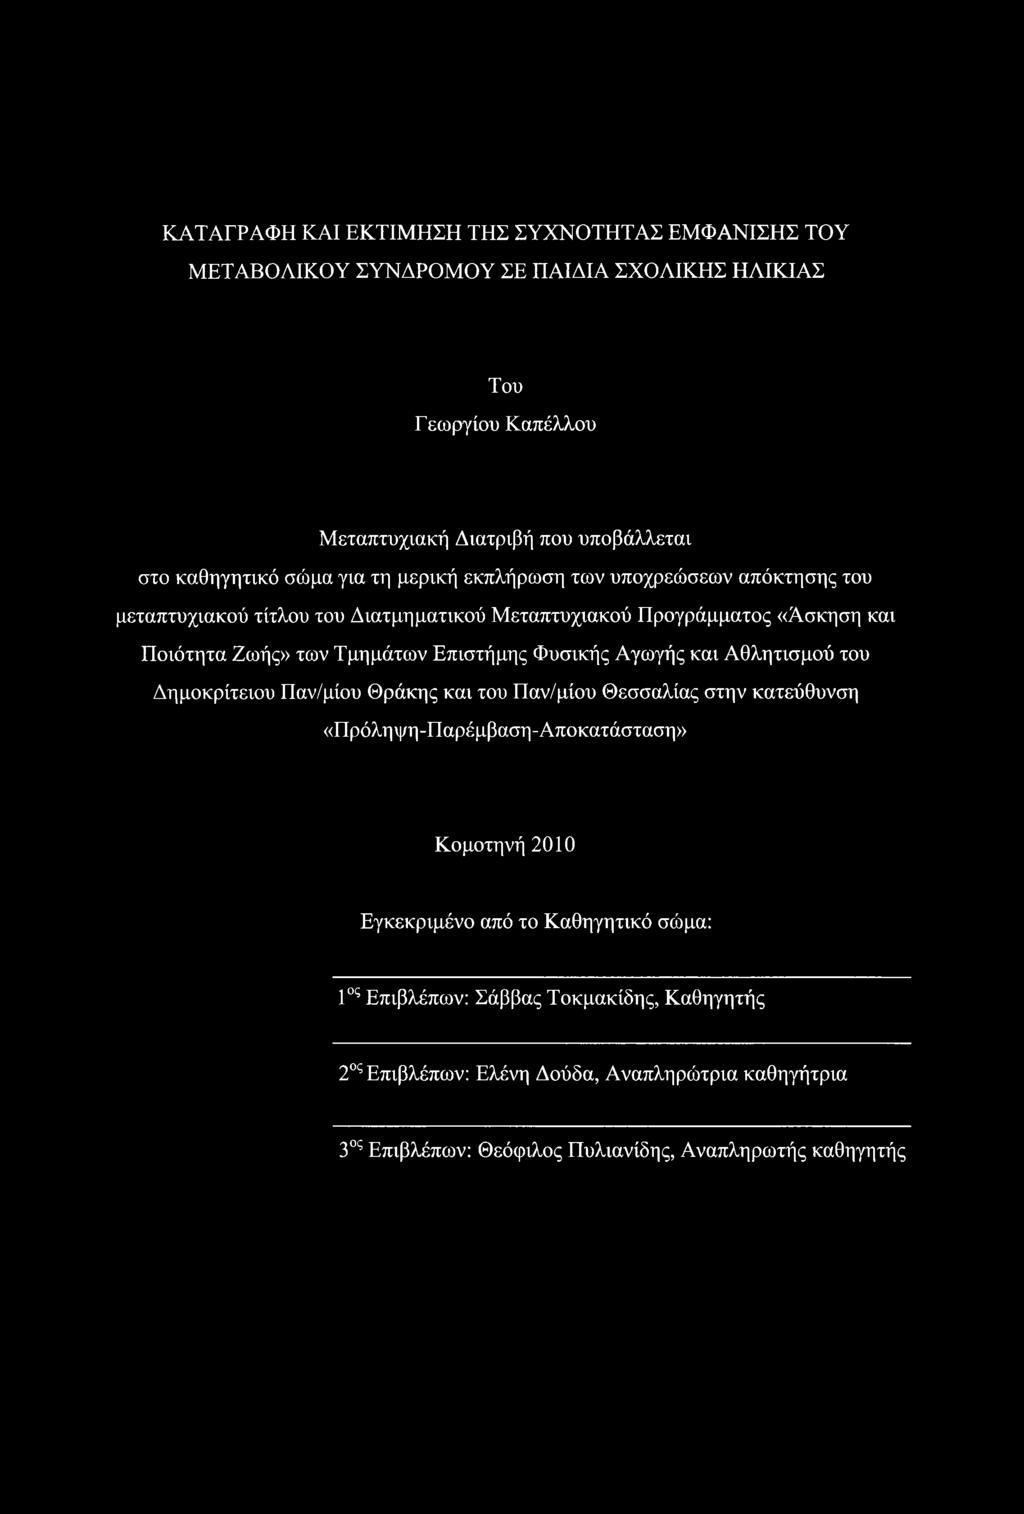 Τμημάτων Επιστήμης Φυσικής Αγωγής και Αθλητισμού του Δημοκρίτειου Παν/μίου Θράκης και του Παν/μίου Θεσσαλίας στην κατεύθυνση «Πρόληψη-Παρέμβαση-Αποκατάσταση» Κομοτηνή 2010